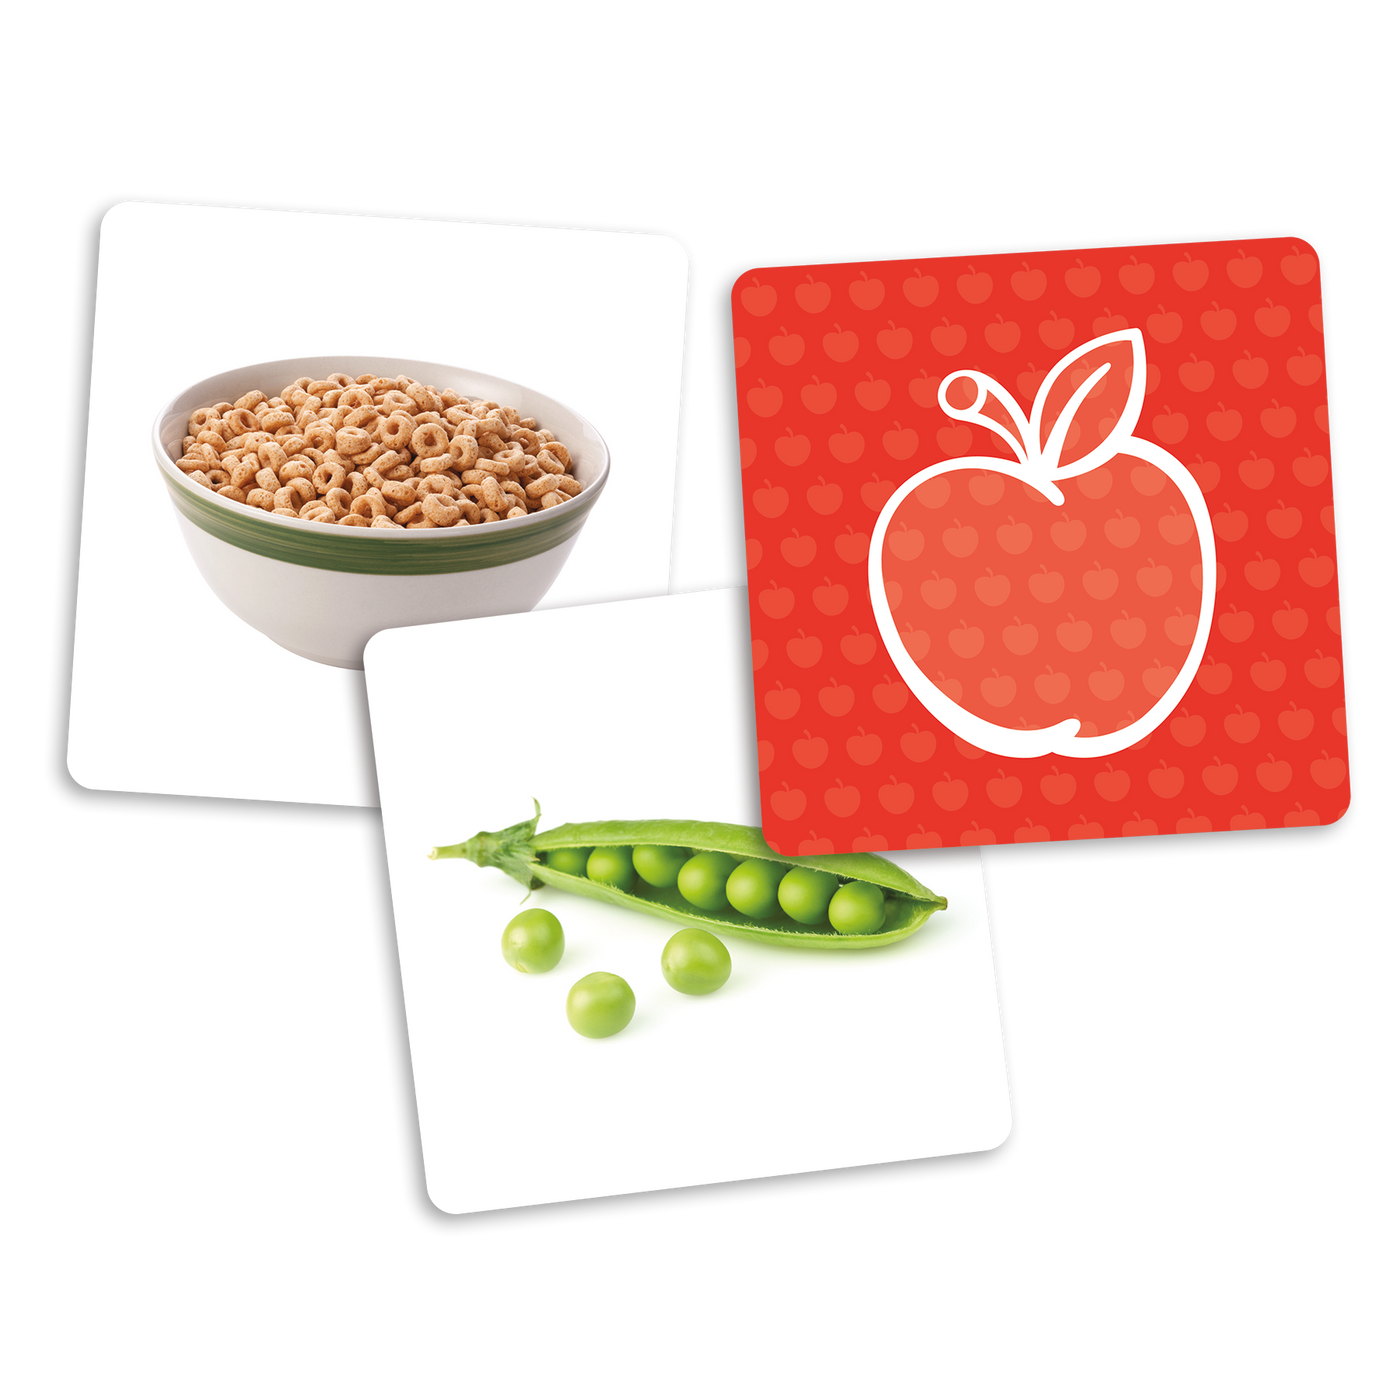 Le dé des premiers mots (cartes supplémentaires) - Exemples de cartes-photos de la catégorie des aliments : céréales et pois